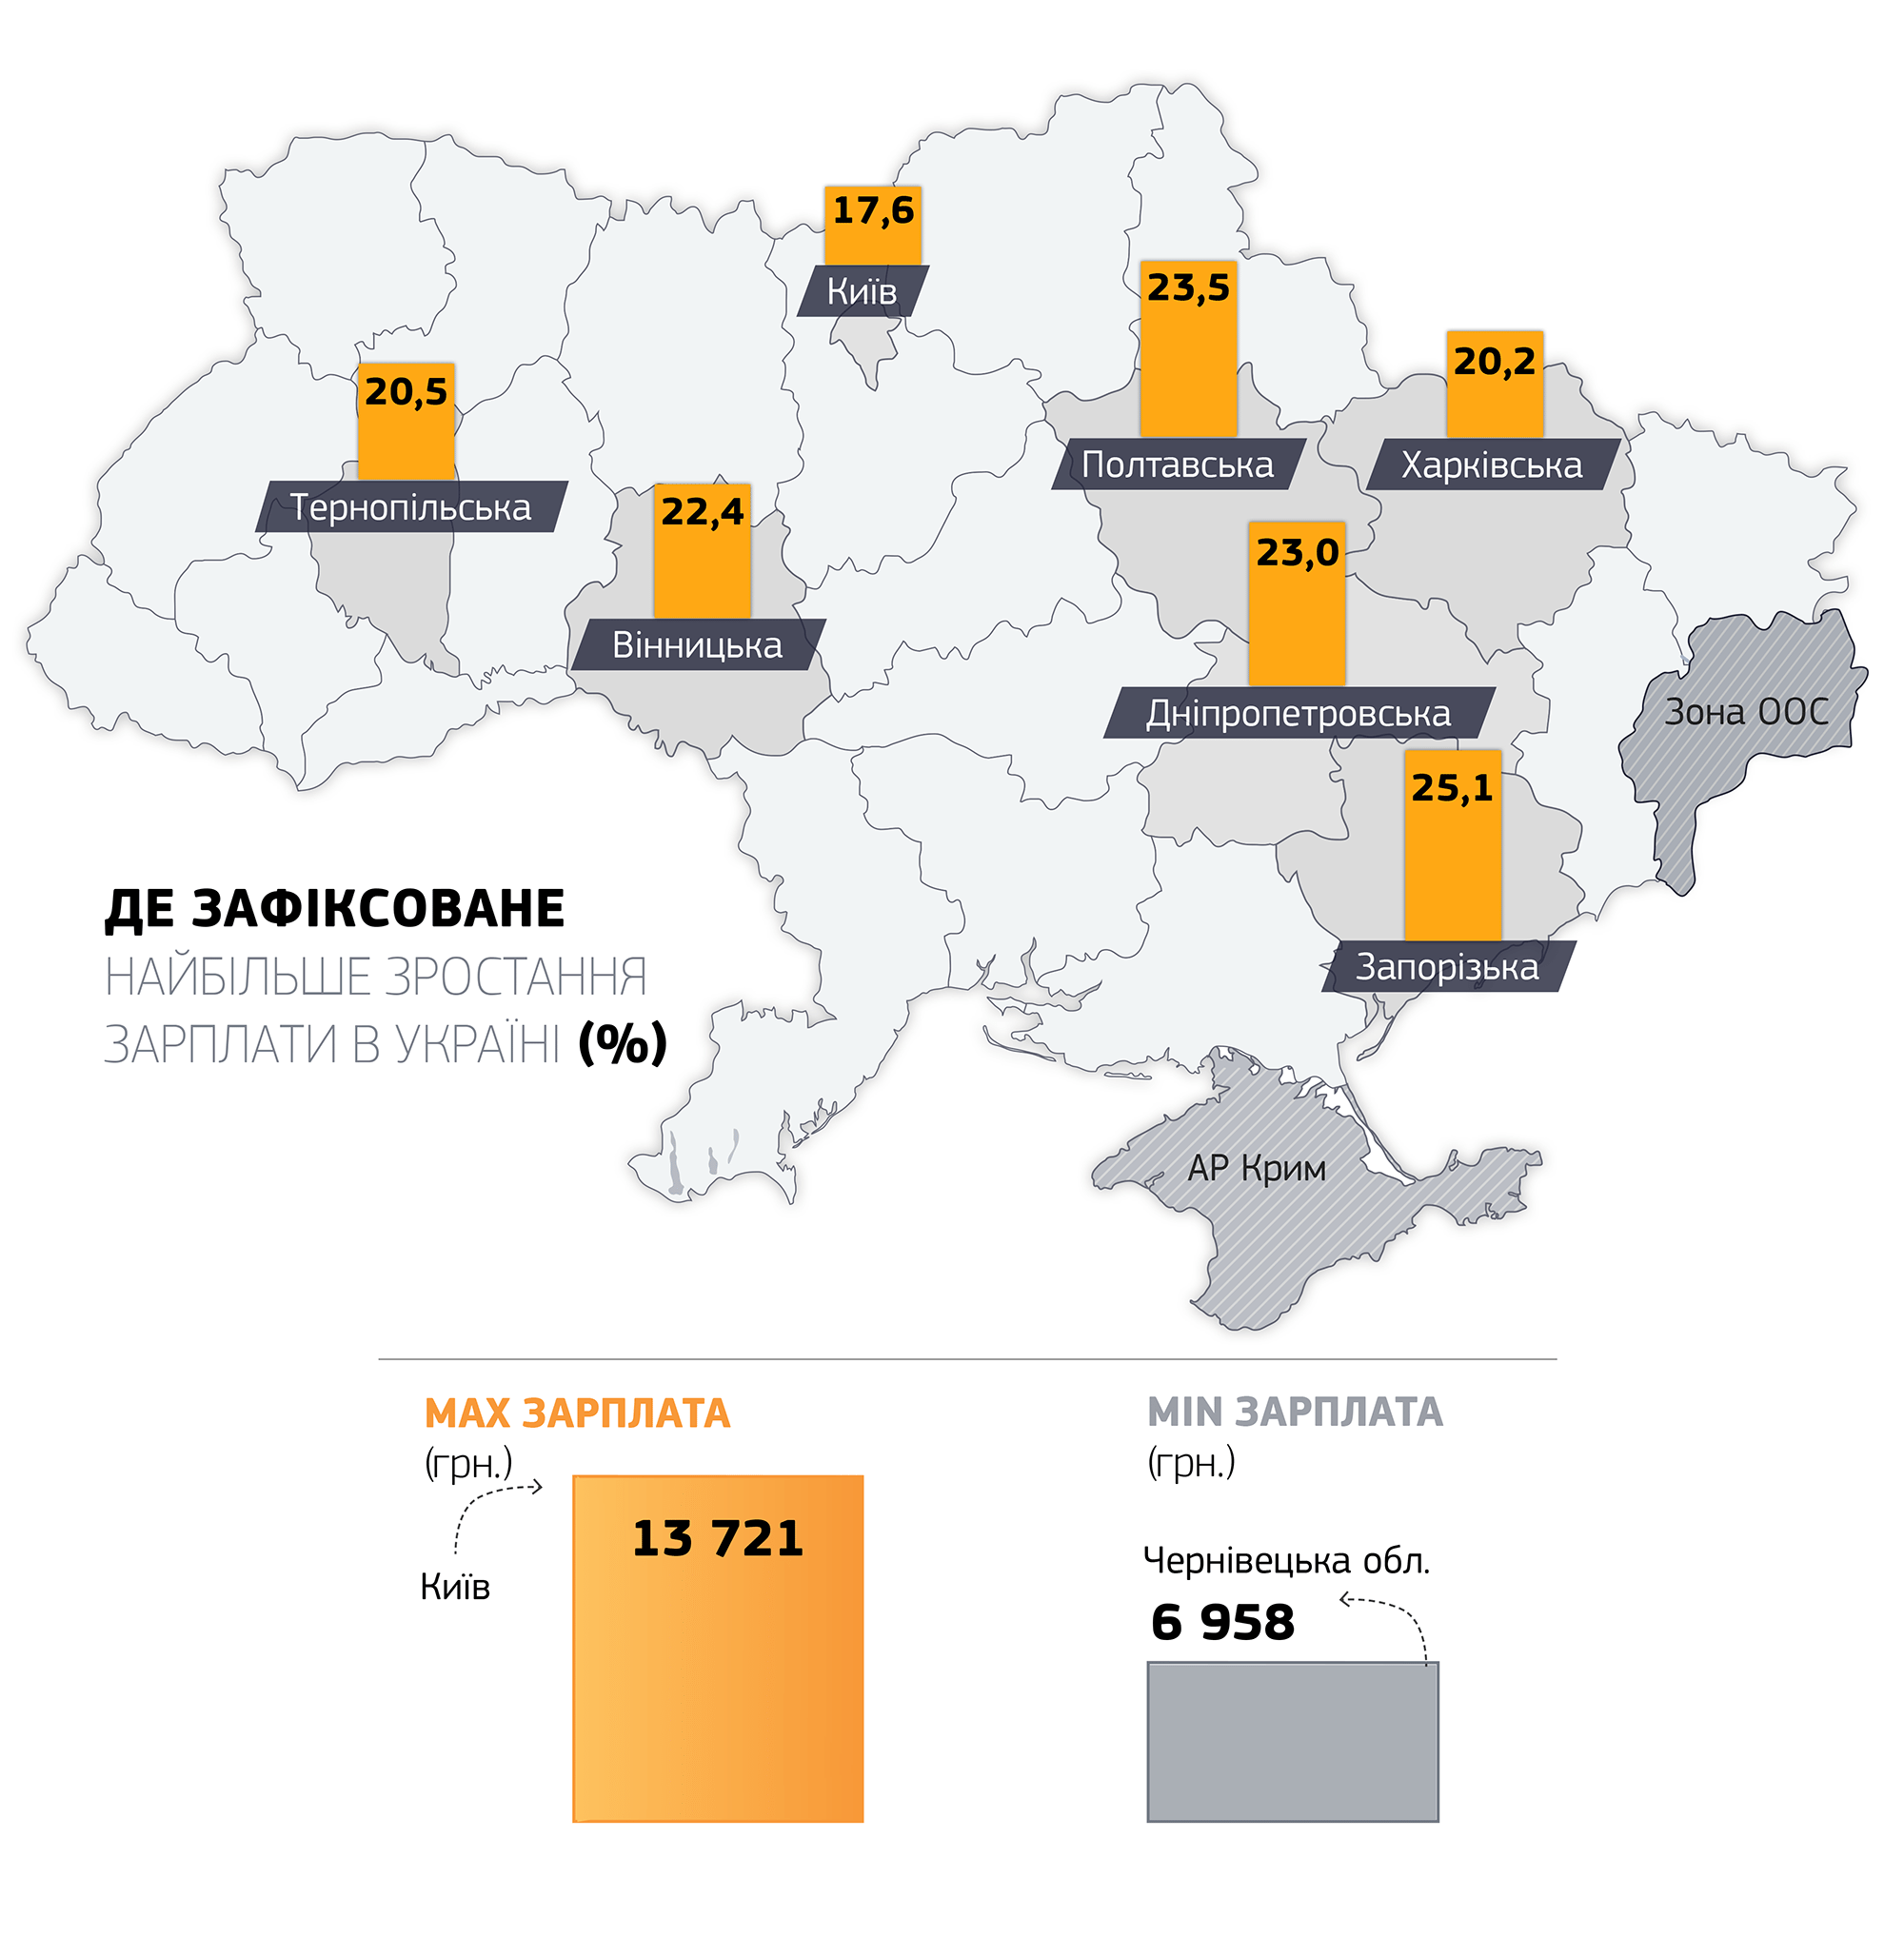 средняя зарплата в Украине